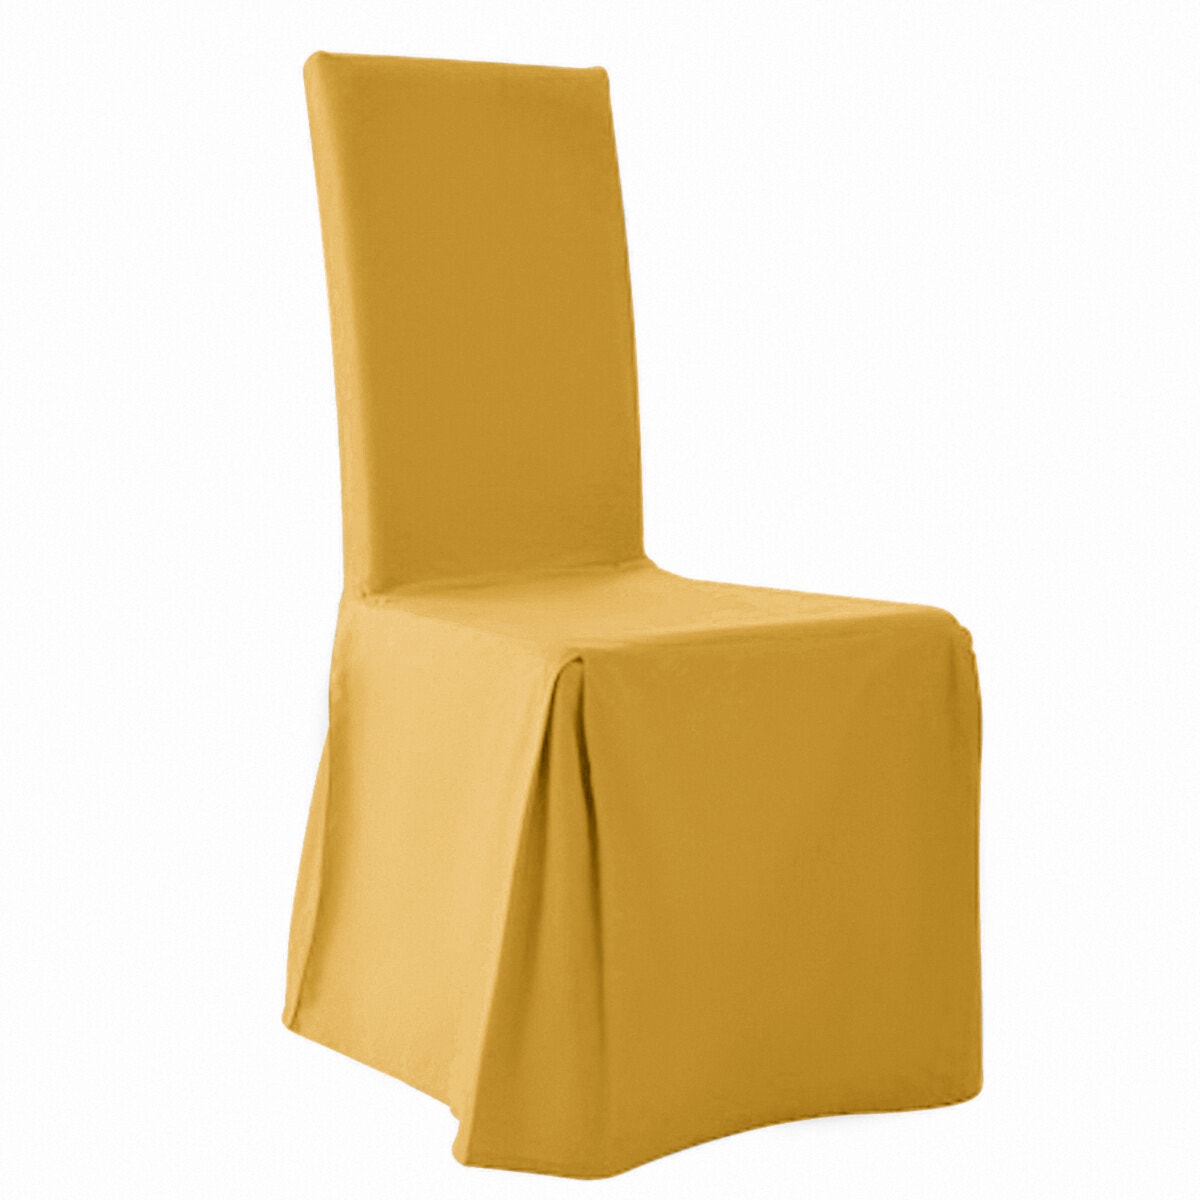 Σπίτι > Λευκά είδη > Ύφασμα, διακόσμηση > Καλύμματα καναπέ, καρέκλας > Καλύμματα καρέκλας Κάλυμμα καρέκλας (σετ των 2) One size